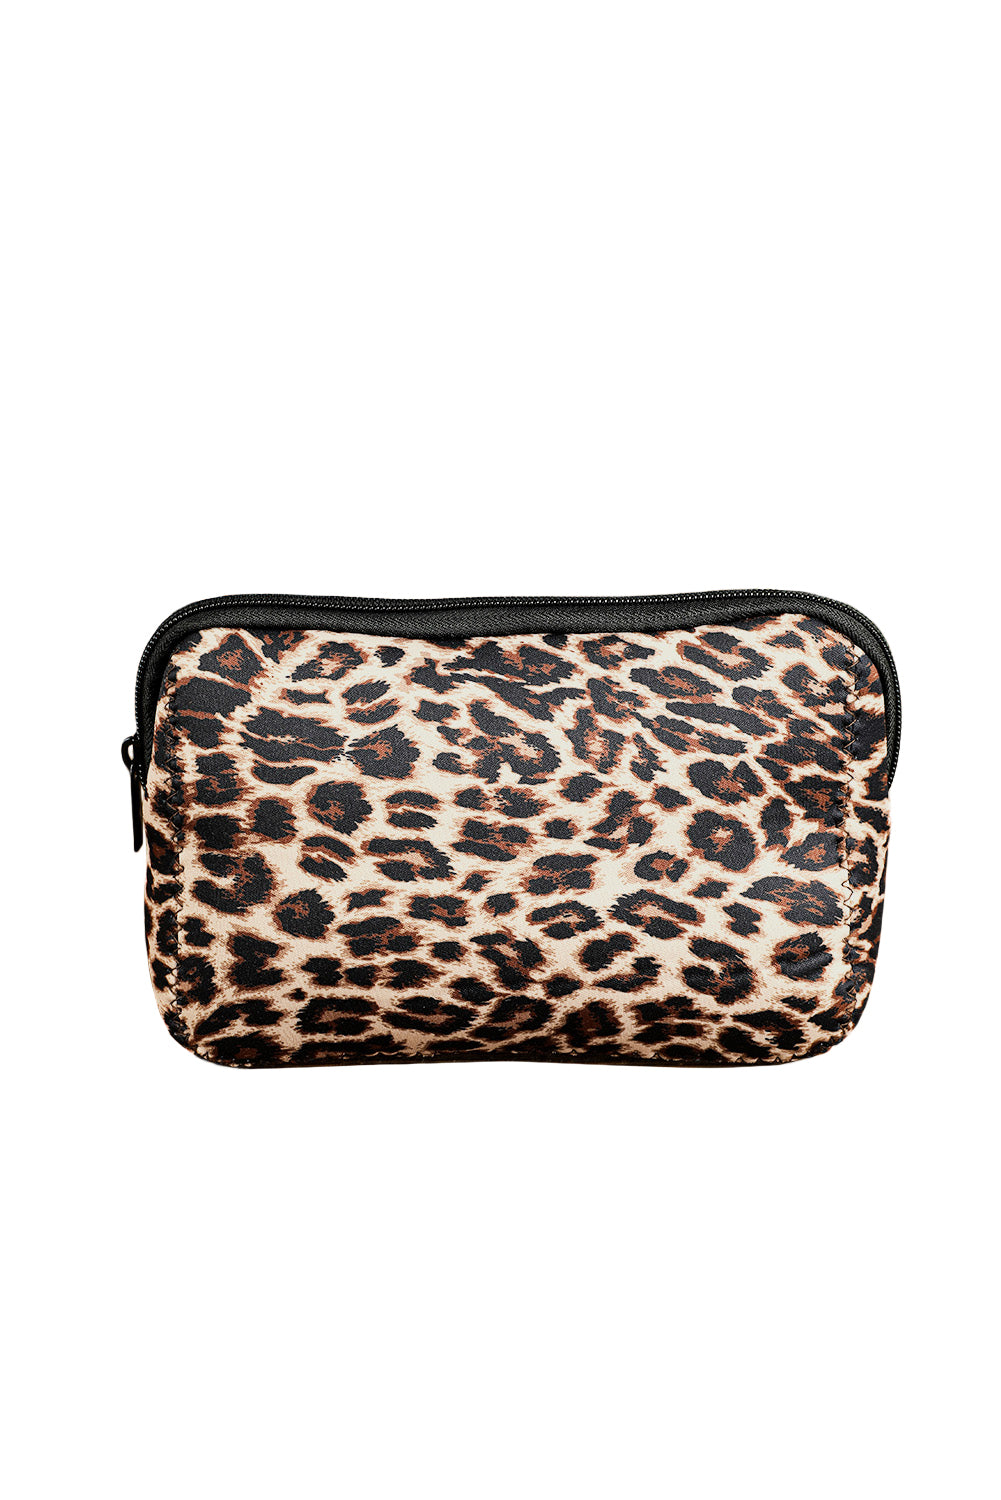 Leopard Make up Storage Bag